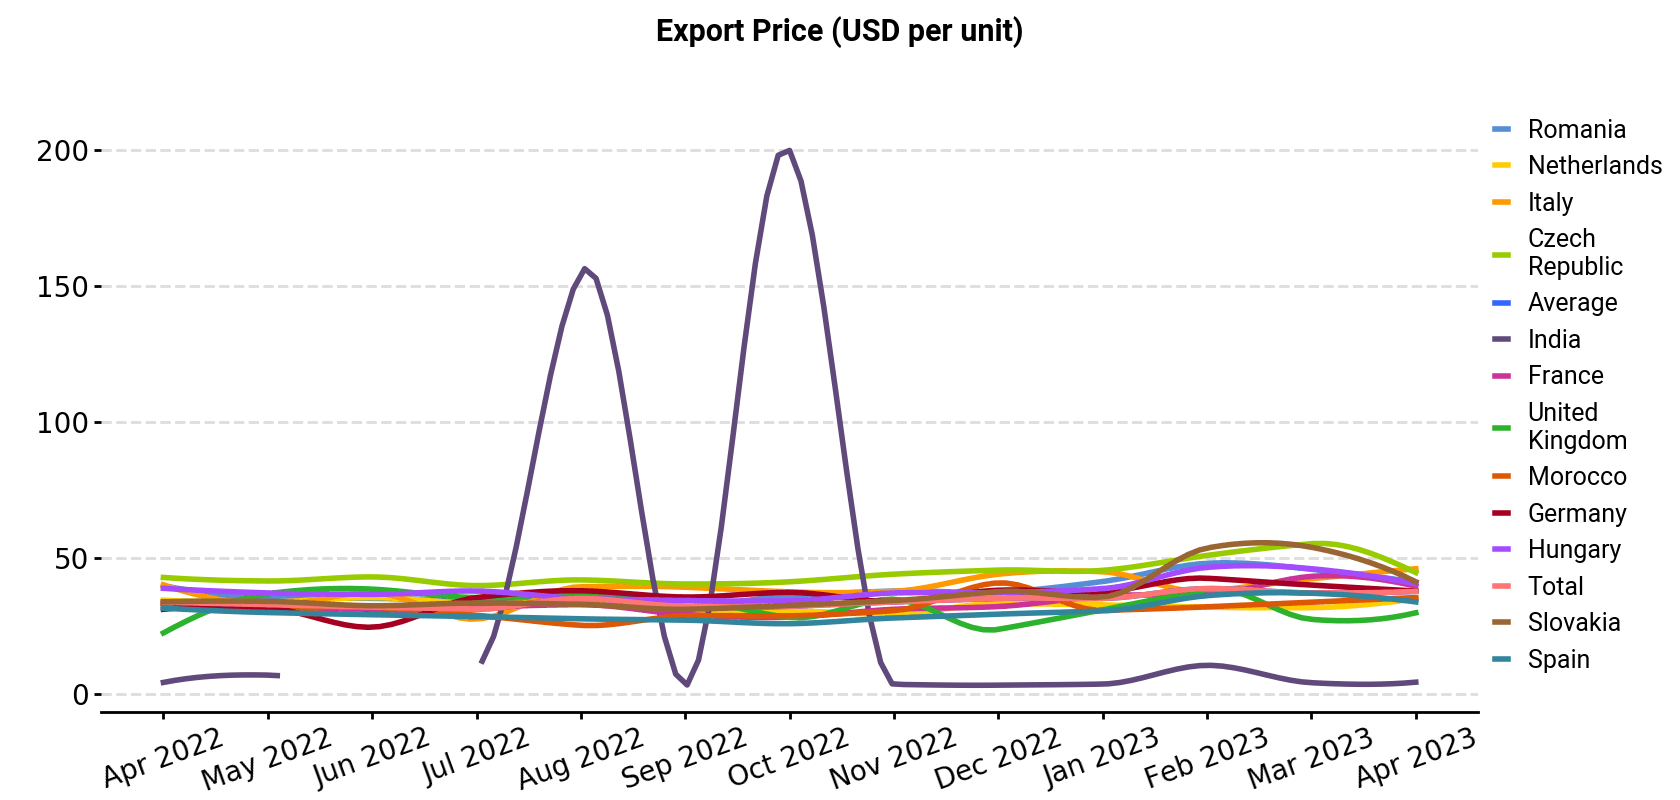 Export Price (USD per unit)